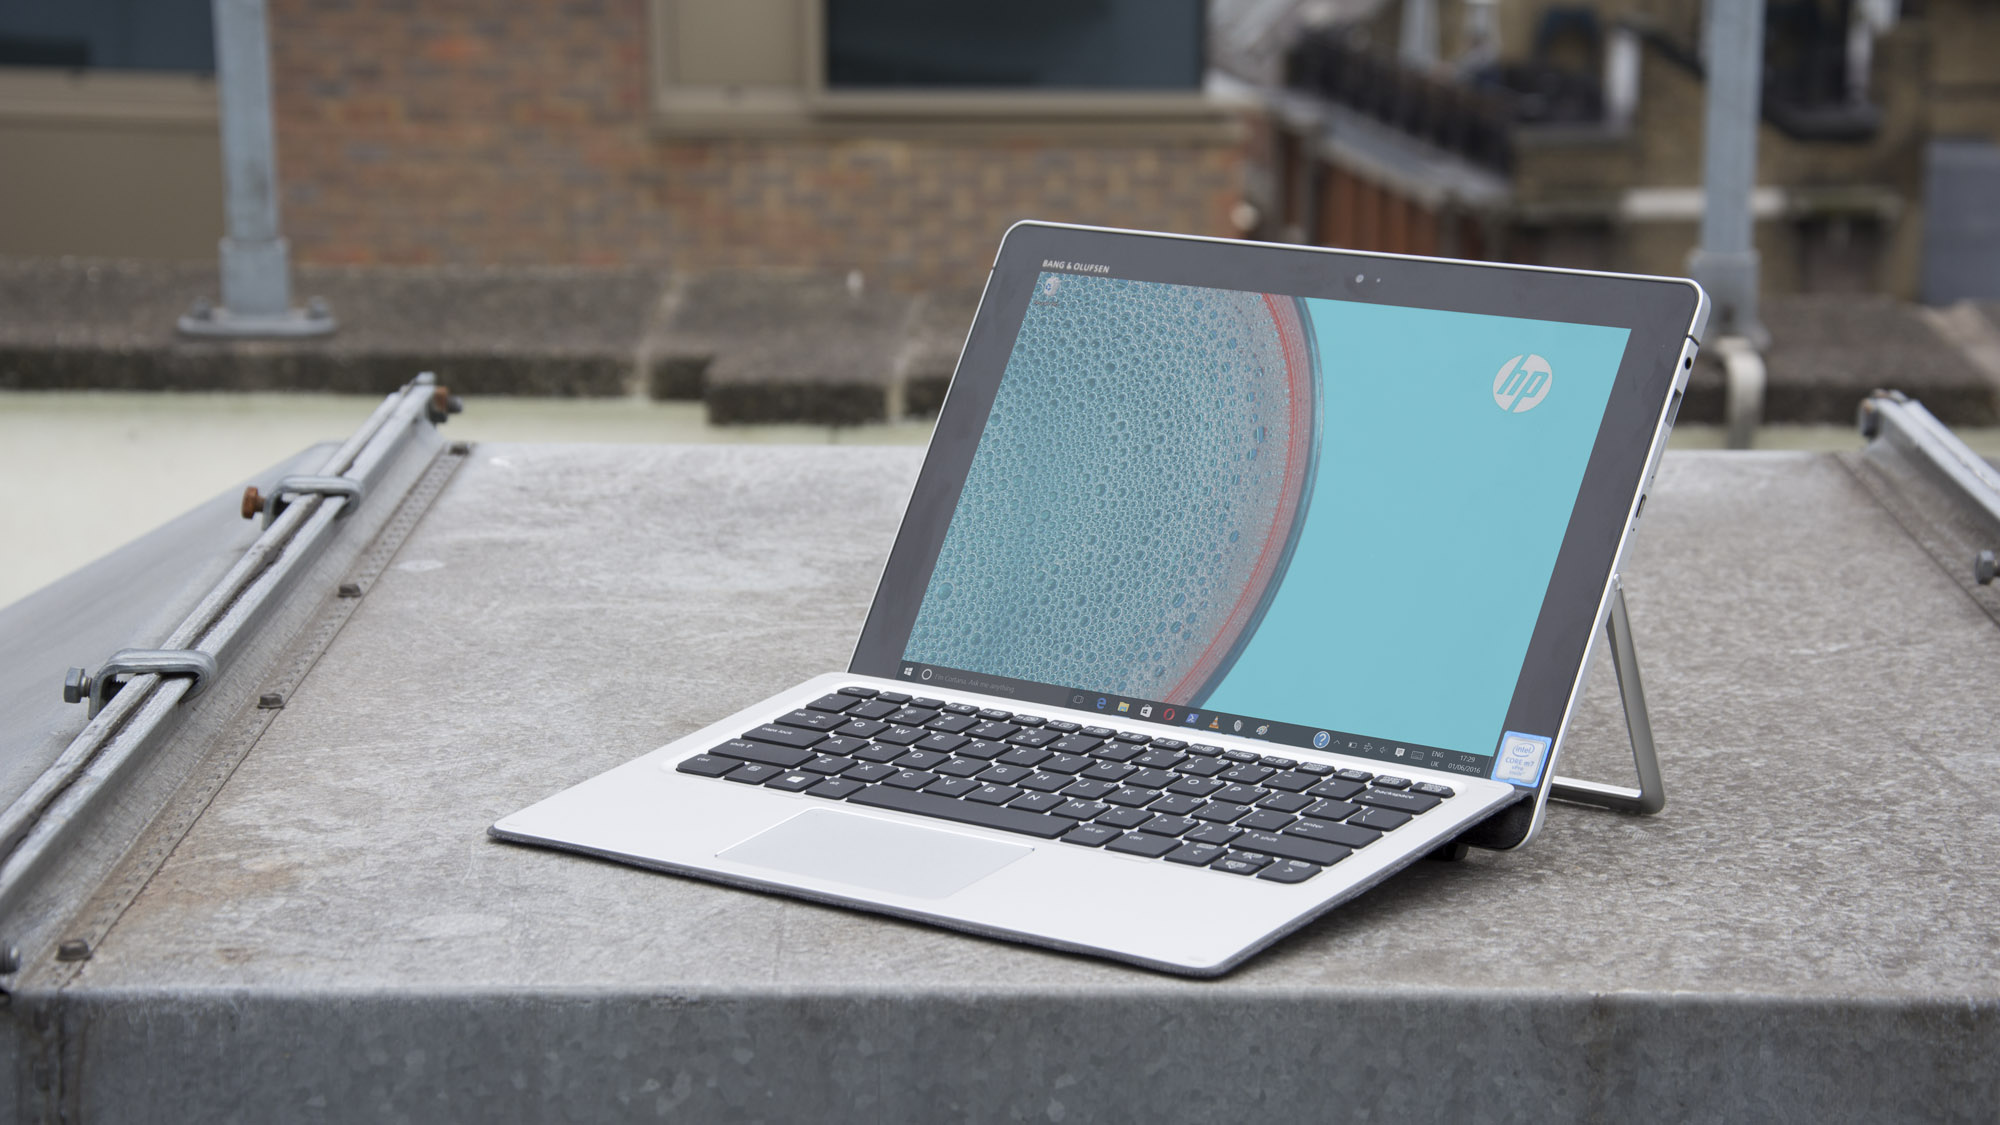 Recenzia HP Elite x2: V niektorých ohľadoch prekonáva Surface Pro 4 (ale nie v iných)